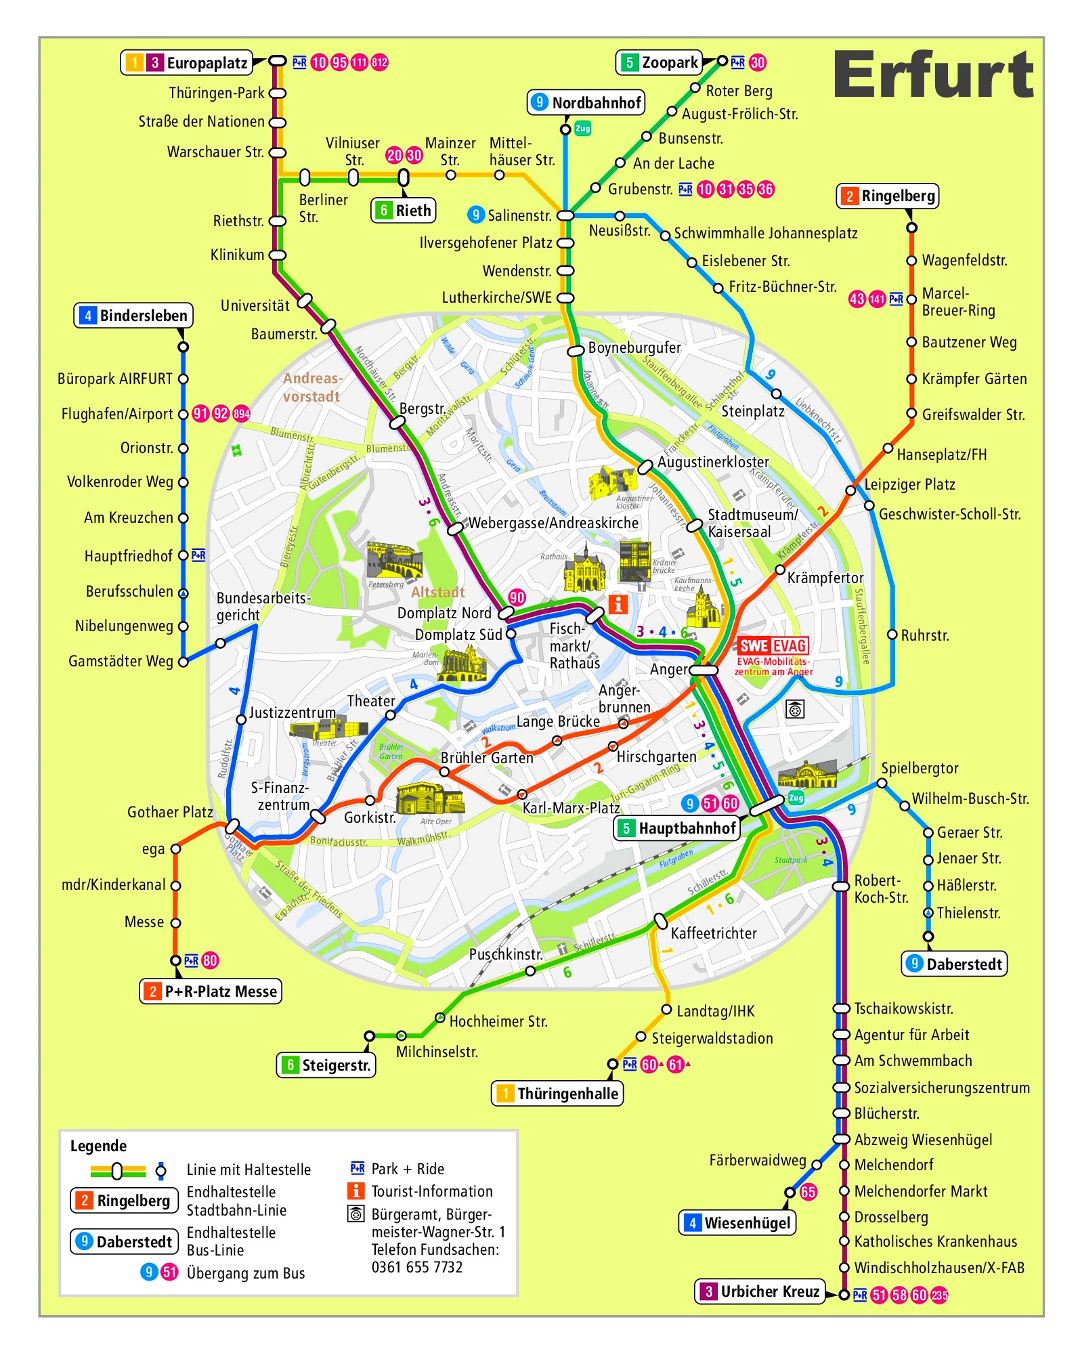 El transporte público gran mapa detallado de la red de la ciudad de Erfurt